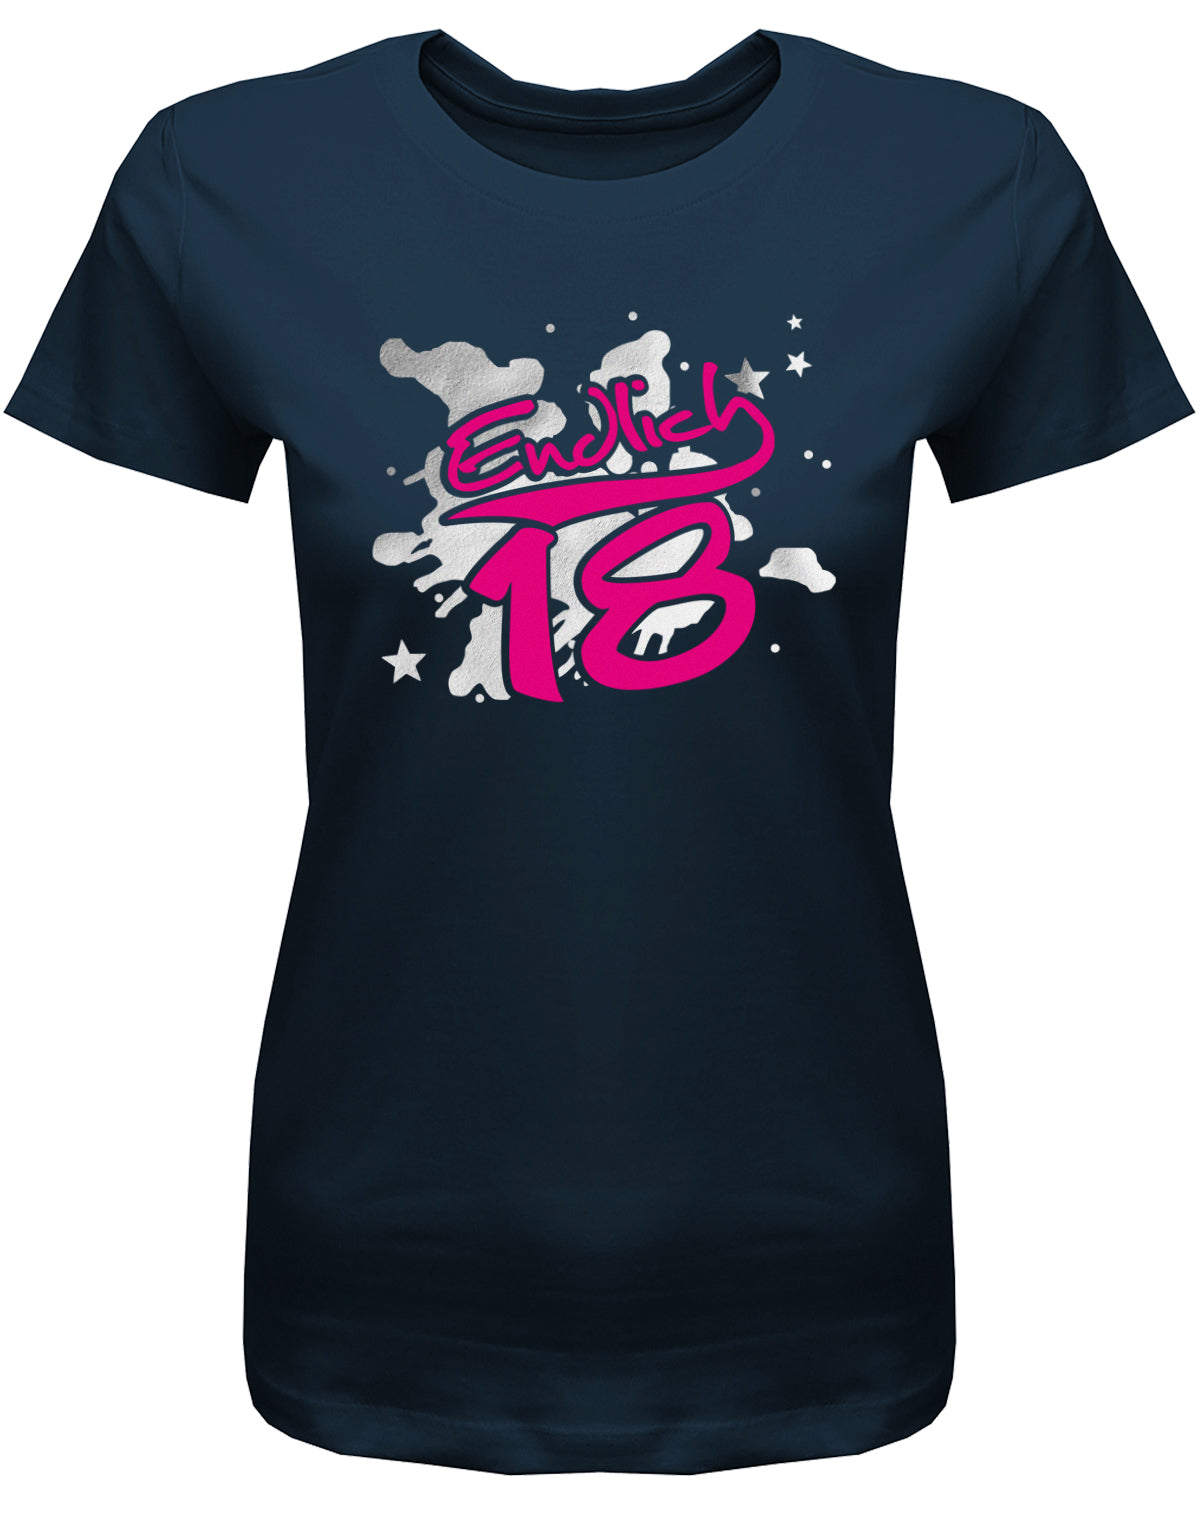 Cooles T-Shirt zum 18. Geburtstag für Mädchen. Bedruckt mit: Endlich 18 in Pink und silbernen Hintergrund. Das T Shirt 18 Geburtstag Mädchen Lustig ist ein tolles Geschenk für alle 18 Jährigen. Geschenk zum 18 geburtstag Frau ✓ 2005 geburtstag Frau ✓ 18 Geburtstag tshirt ✓ shirt geburtstag 18 Navy